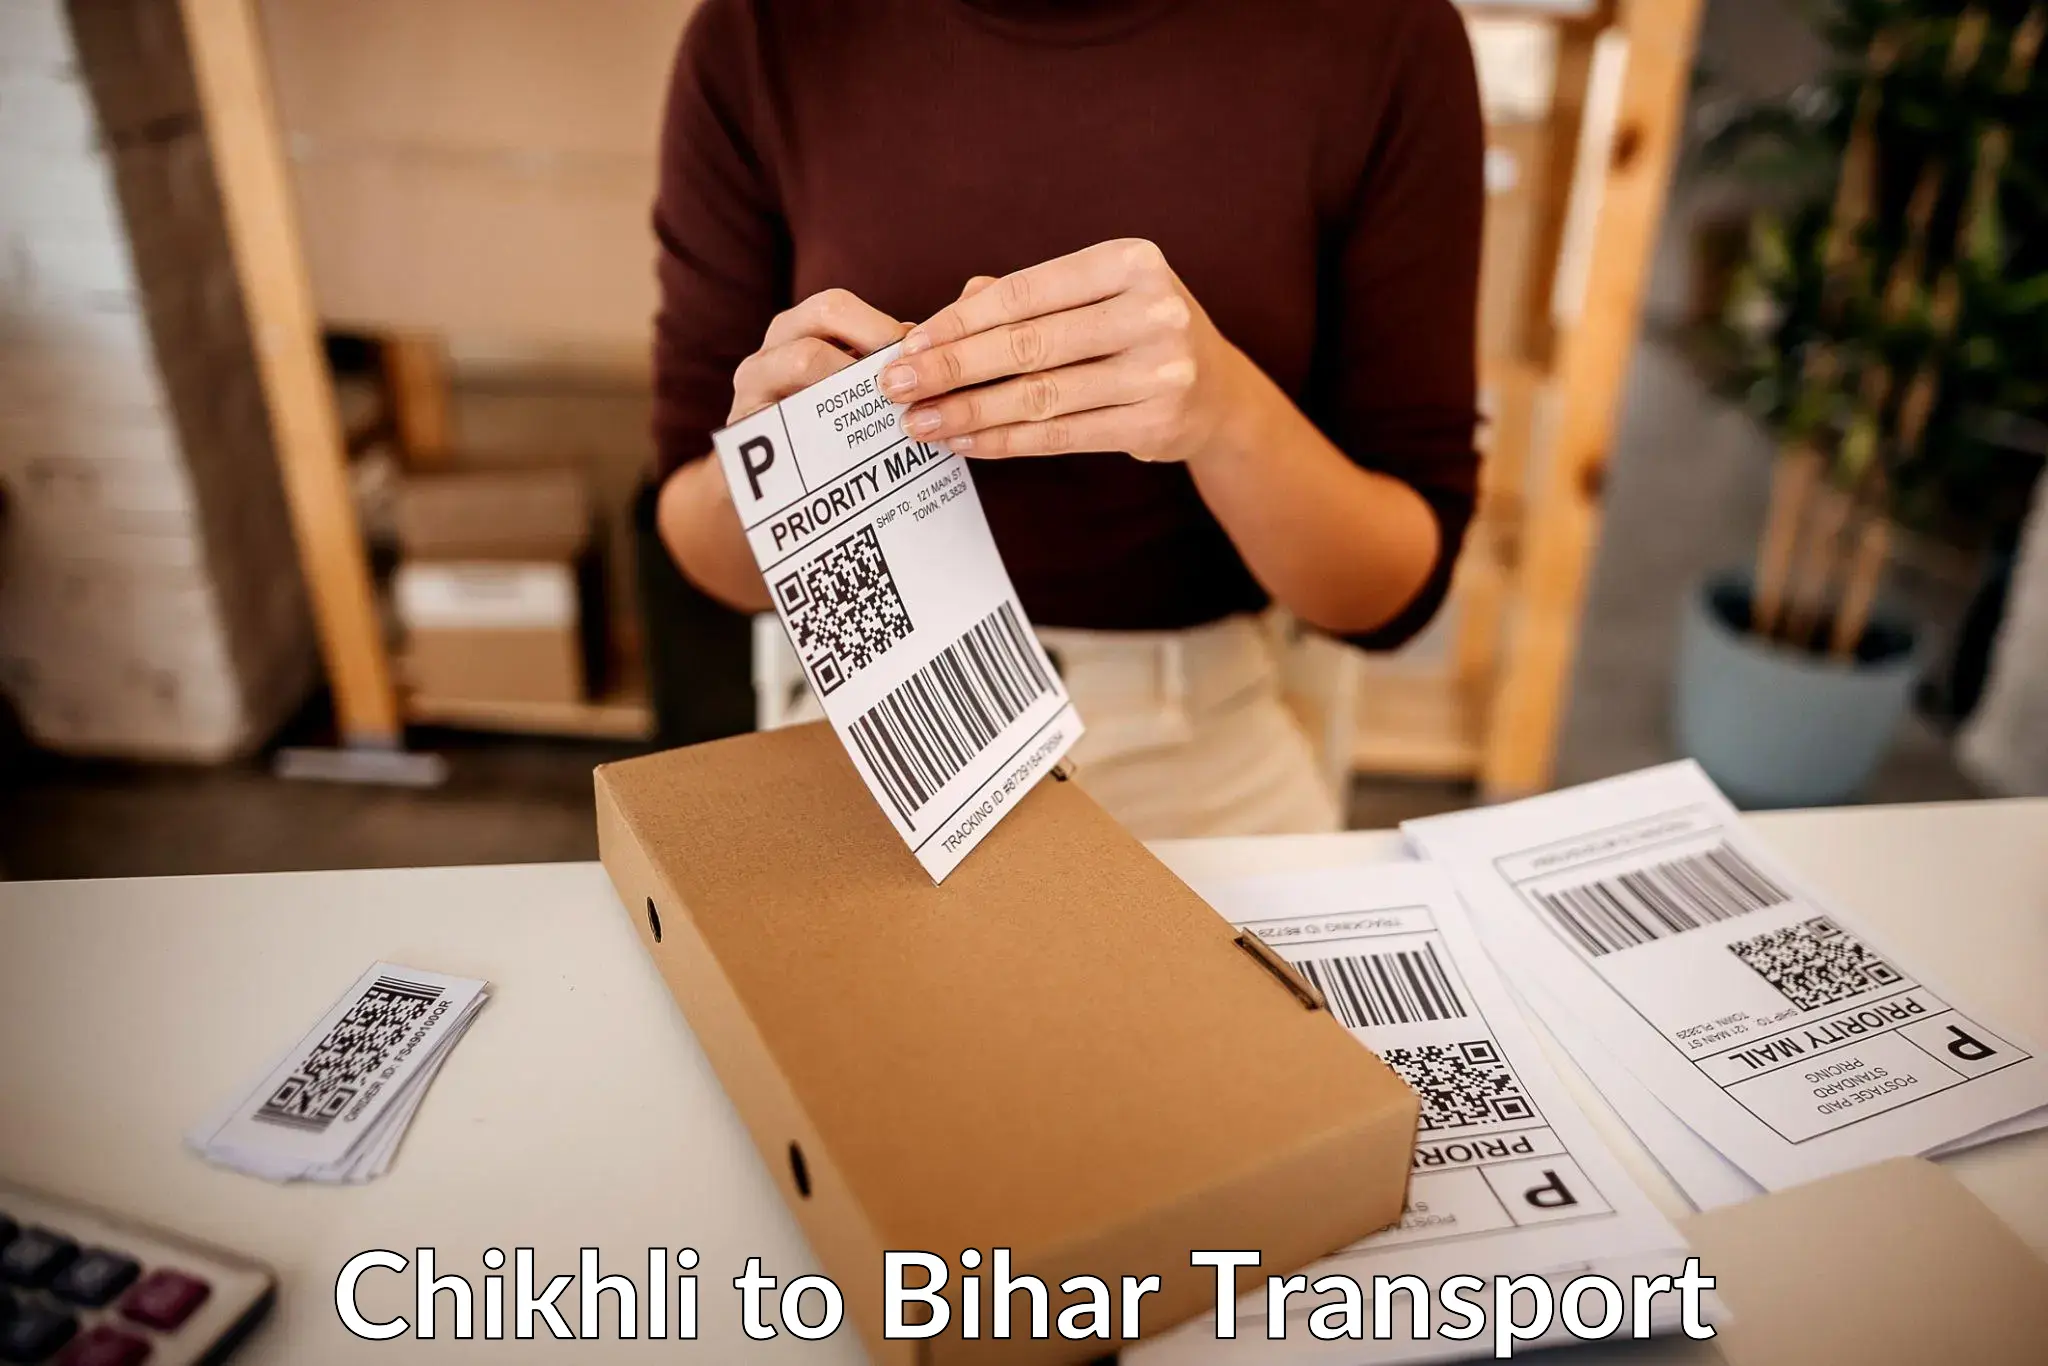 Truck transport companies in India Chikhli to Mairwa